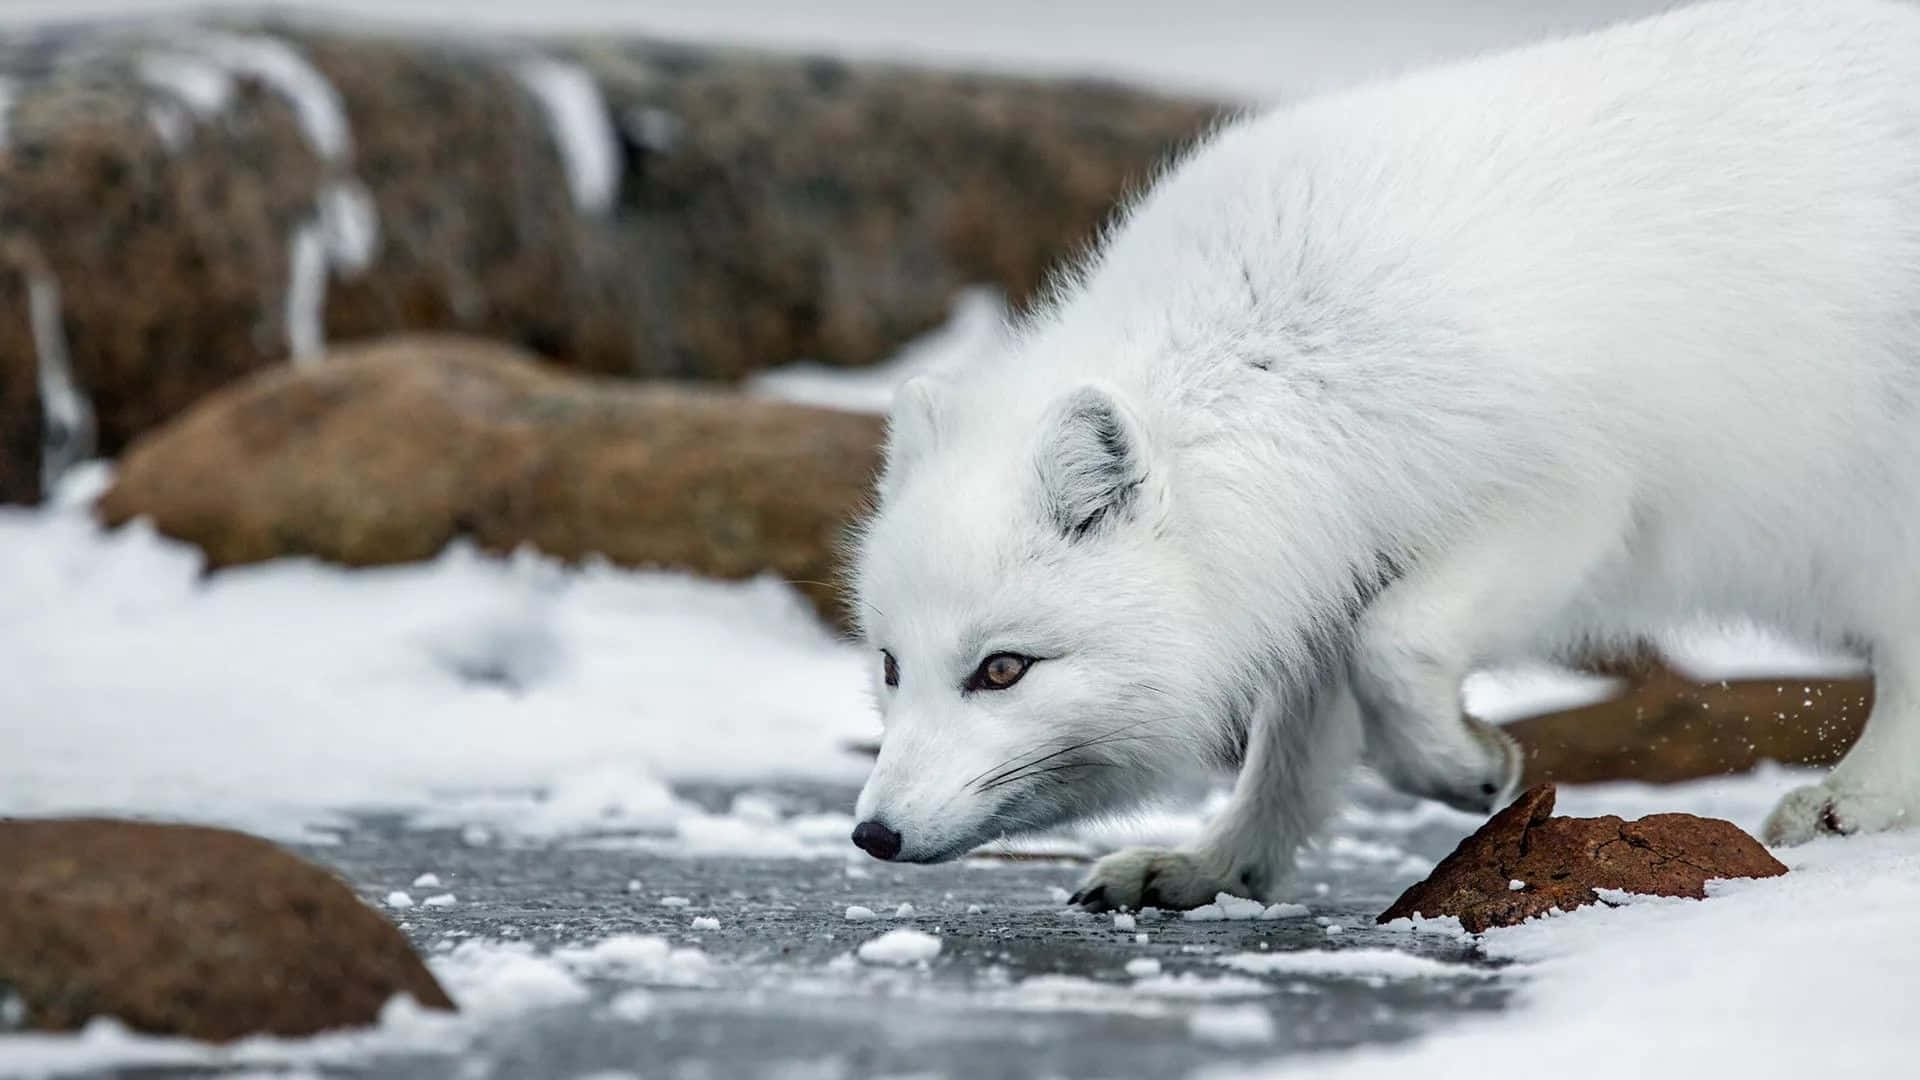 Image  A Close Up of an Arctic Fox